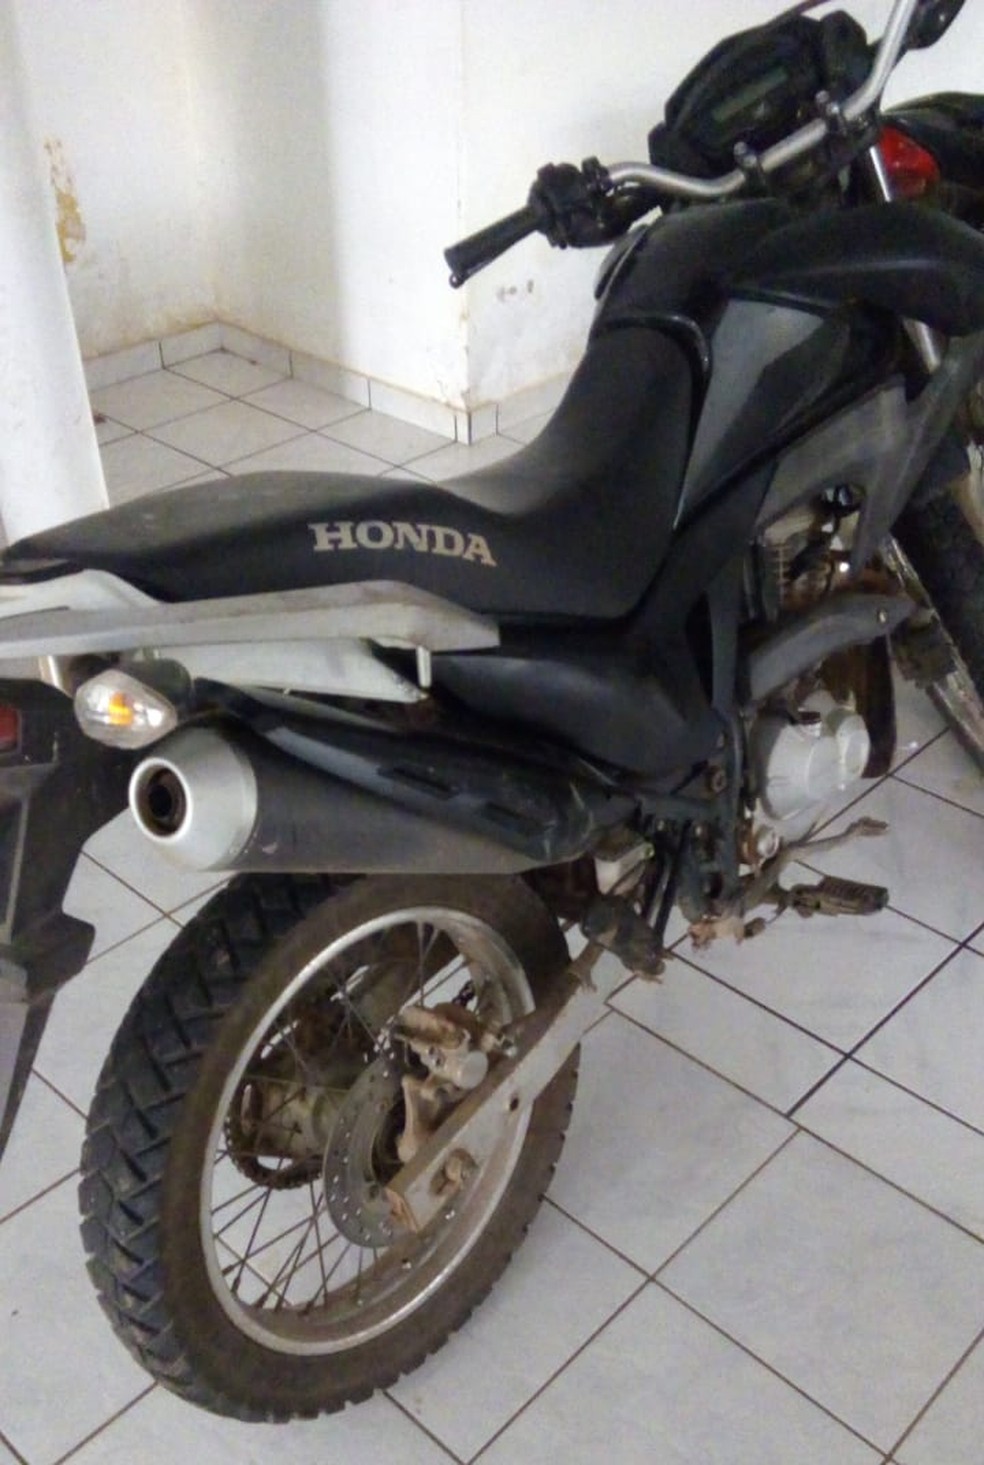 Moto usada no arrastão foi roubada antes do crime — Foto: Divulgação/Polícia Militar